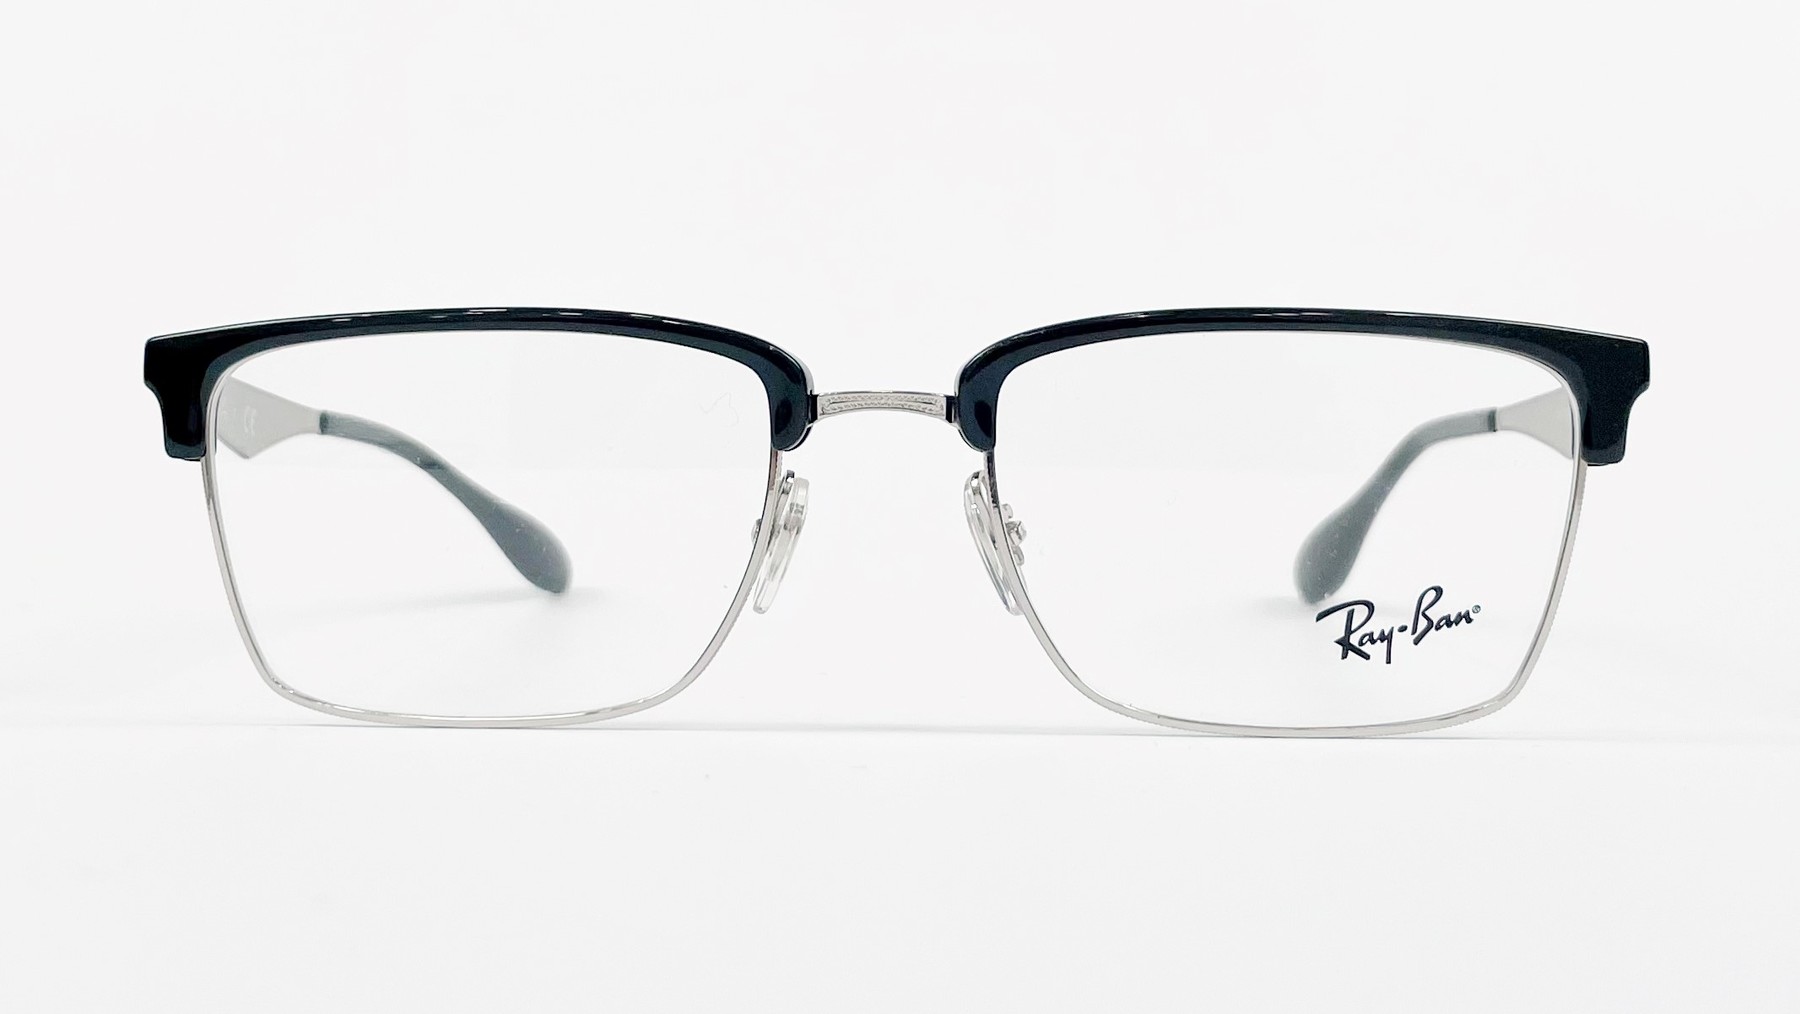 RayBan RB6397 2932, Korean glasses, sunglasses, eyeglasses, glasses